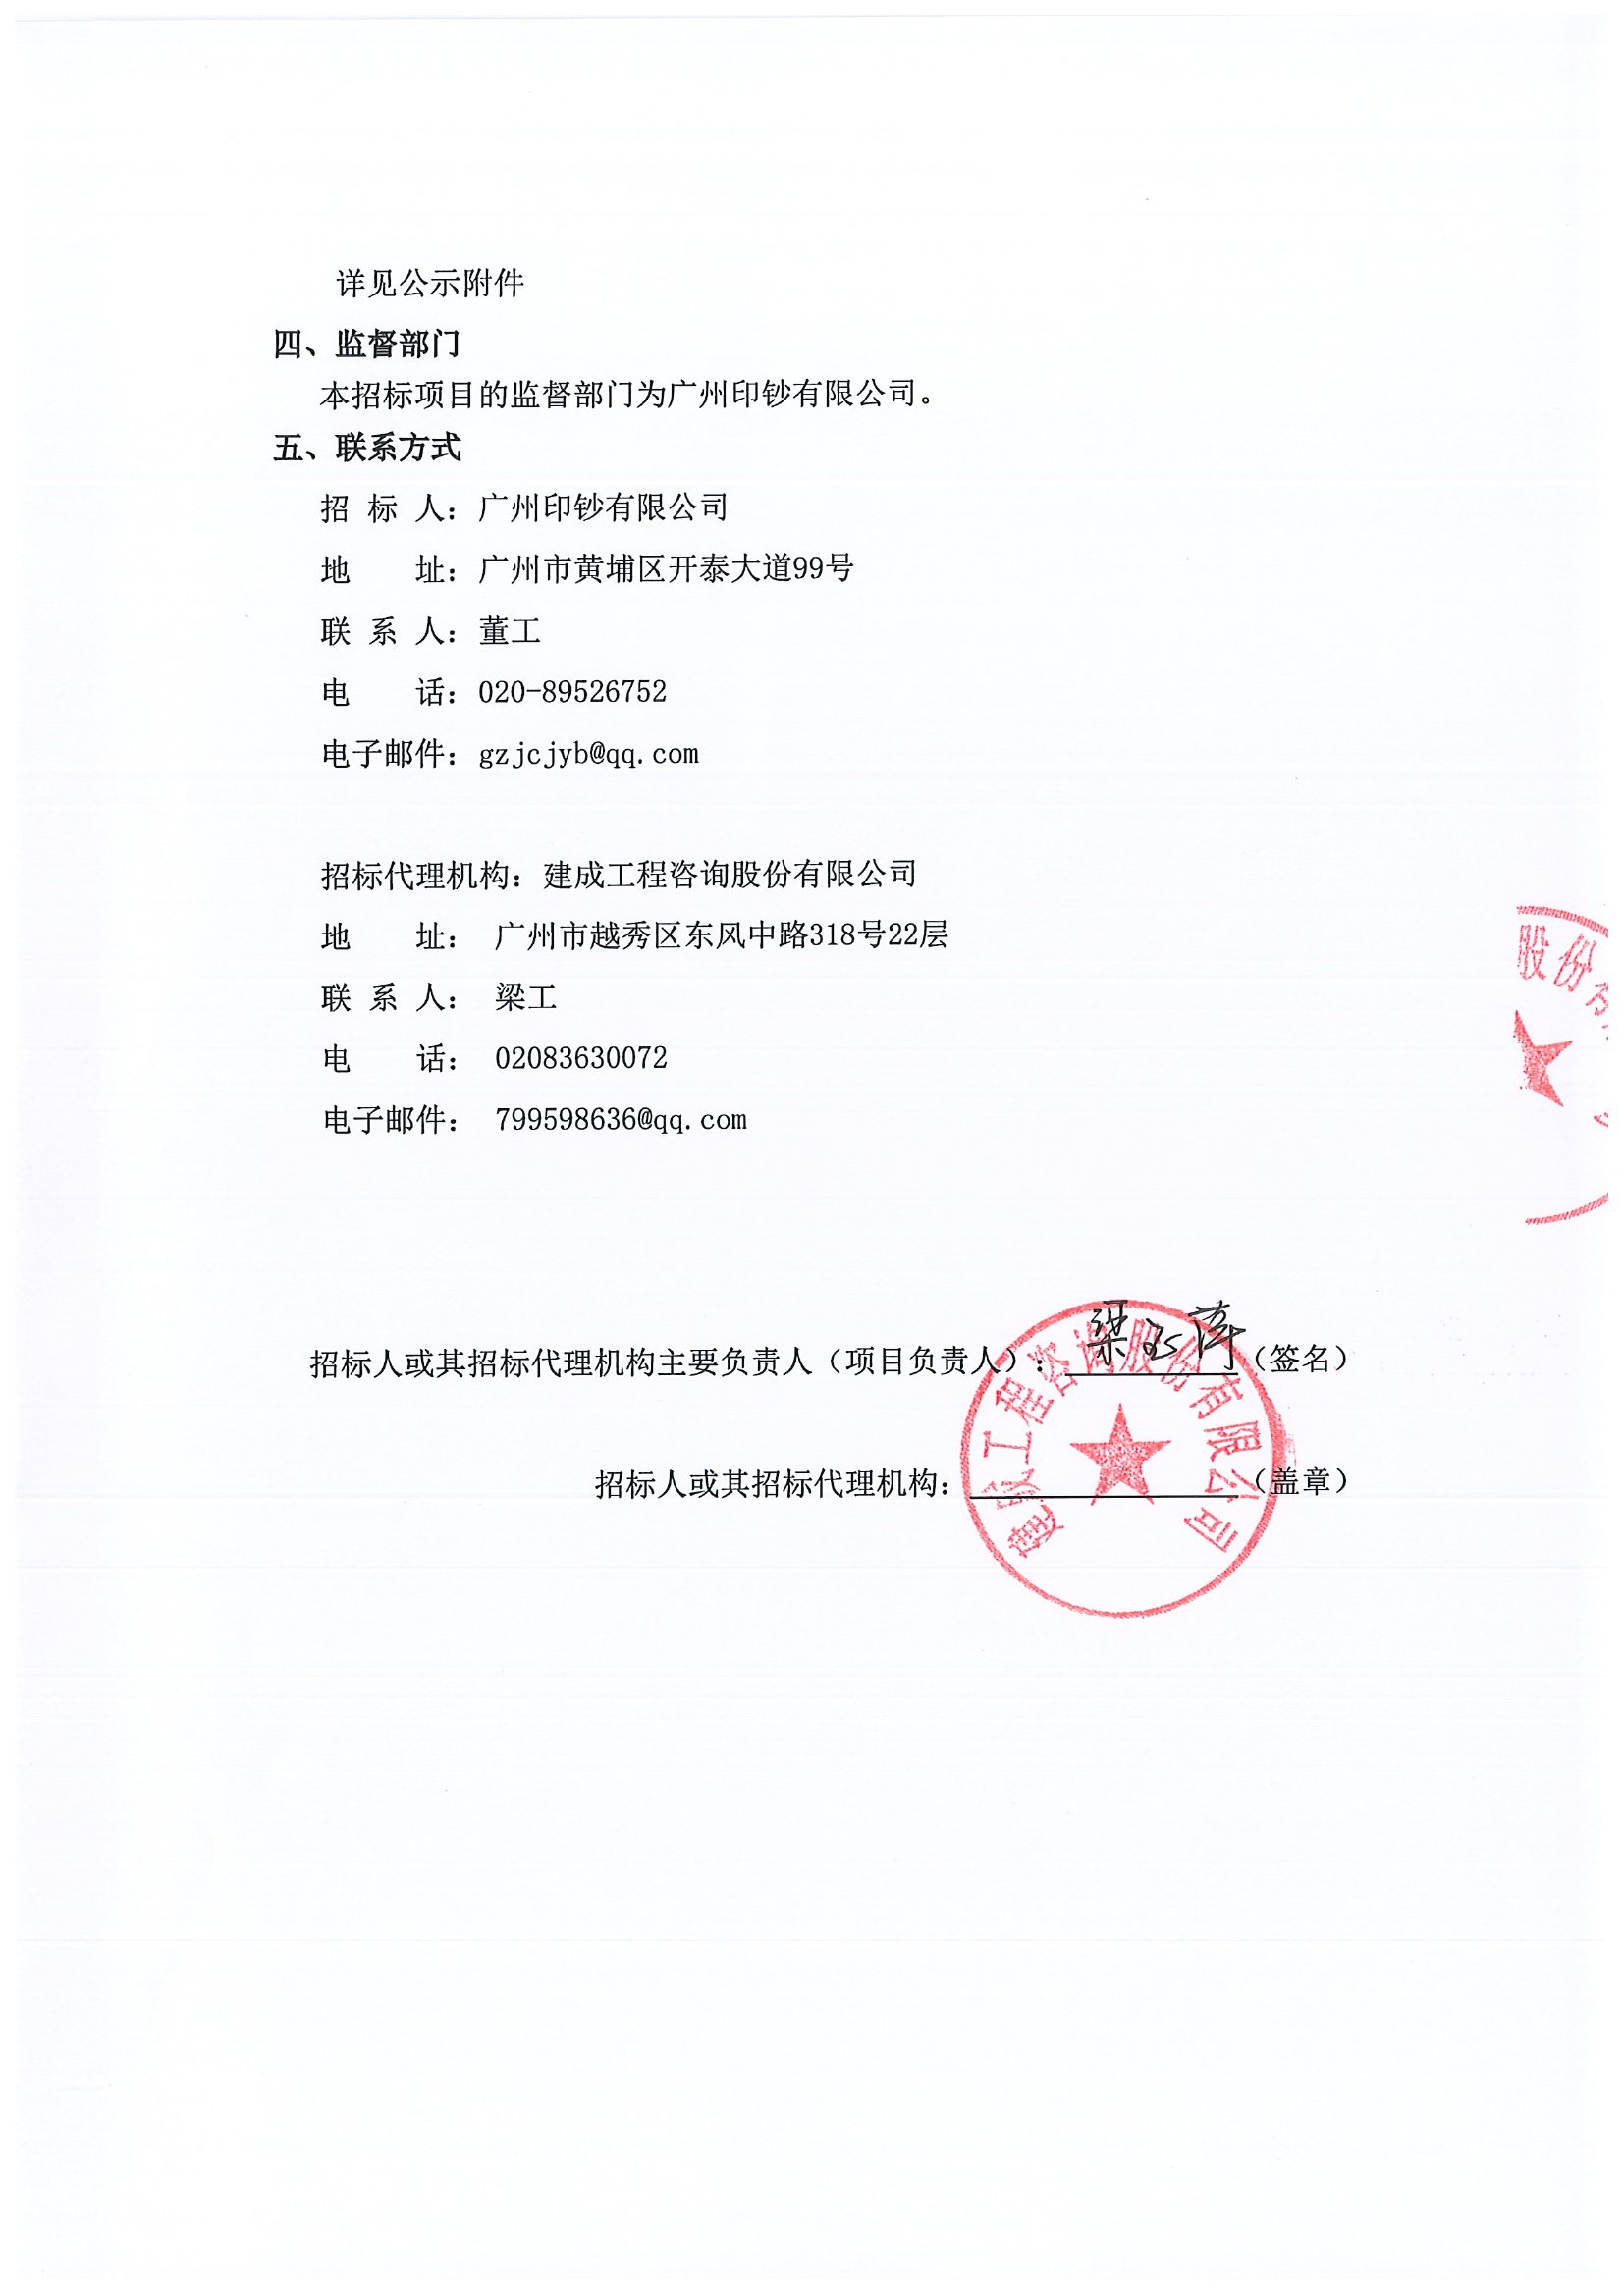 广州印钞有限公司武警执勤,反恐设备设施采购中标候选